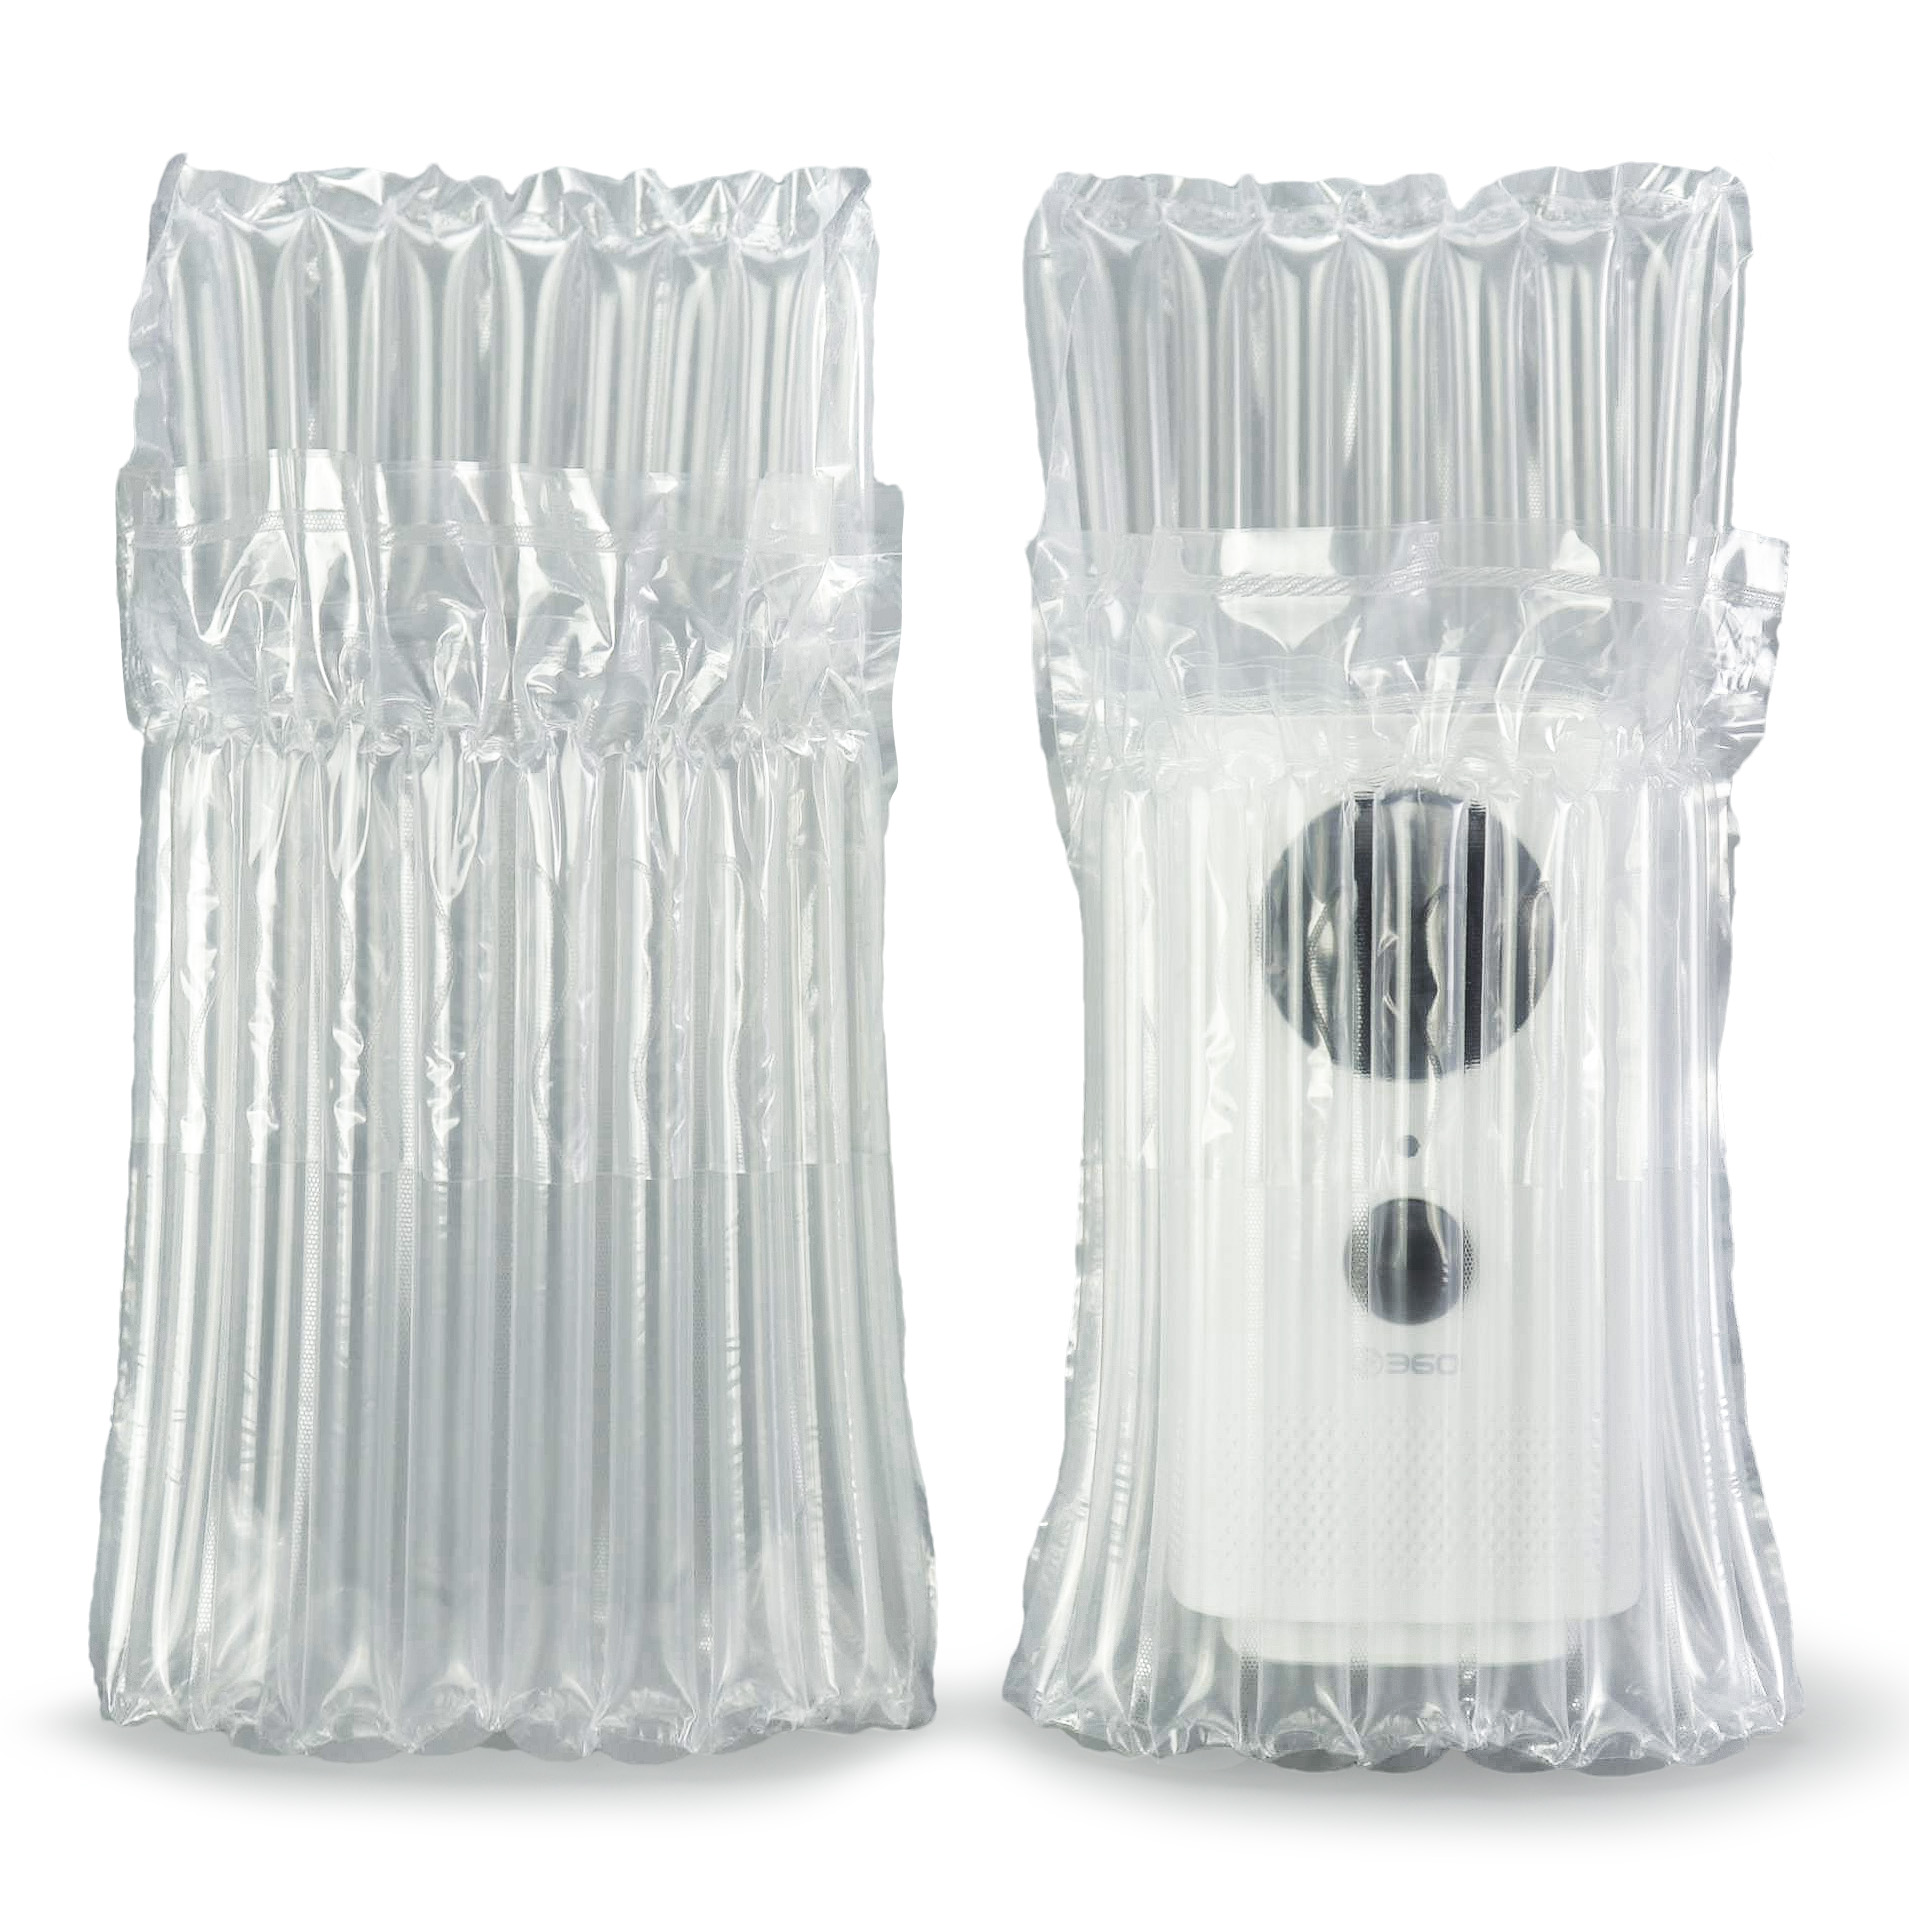 Camera Air Column Bag Packaging